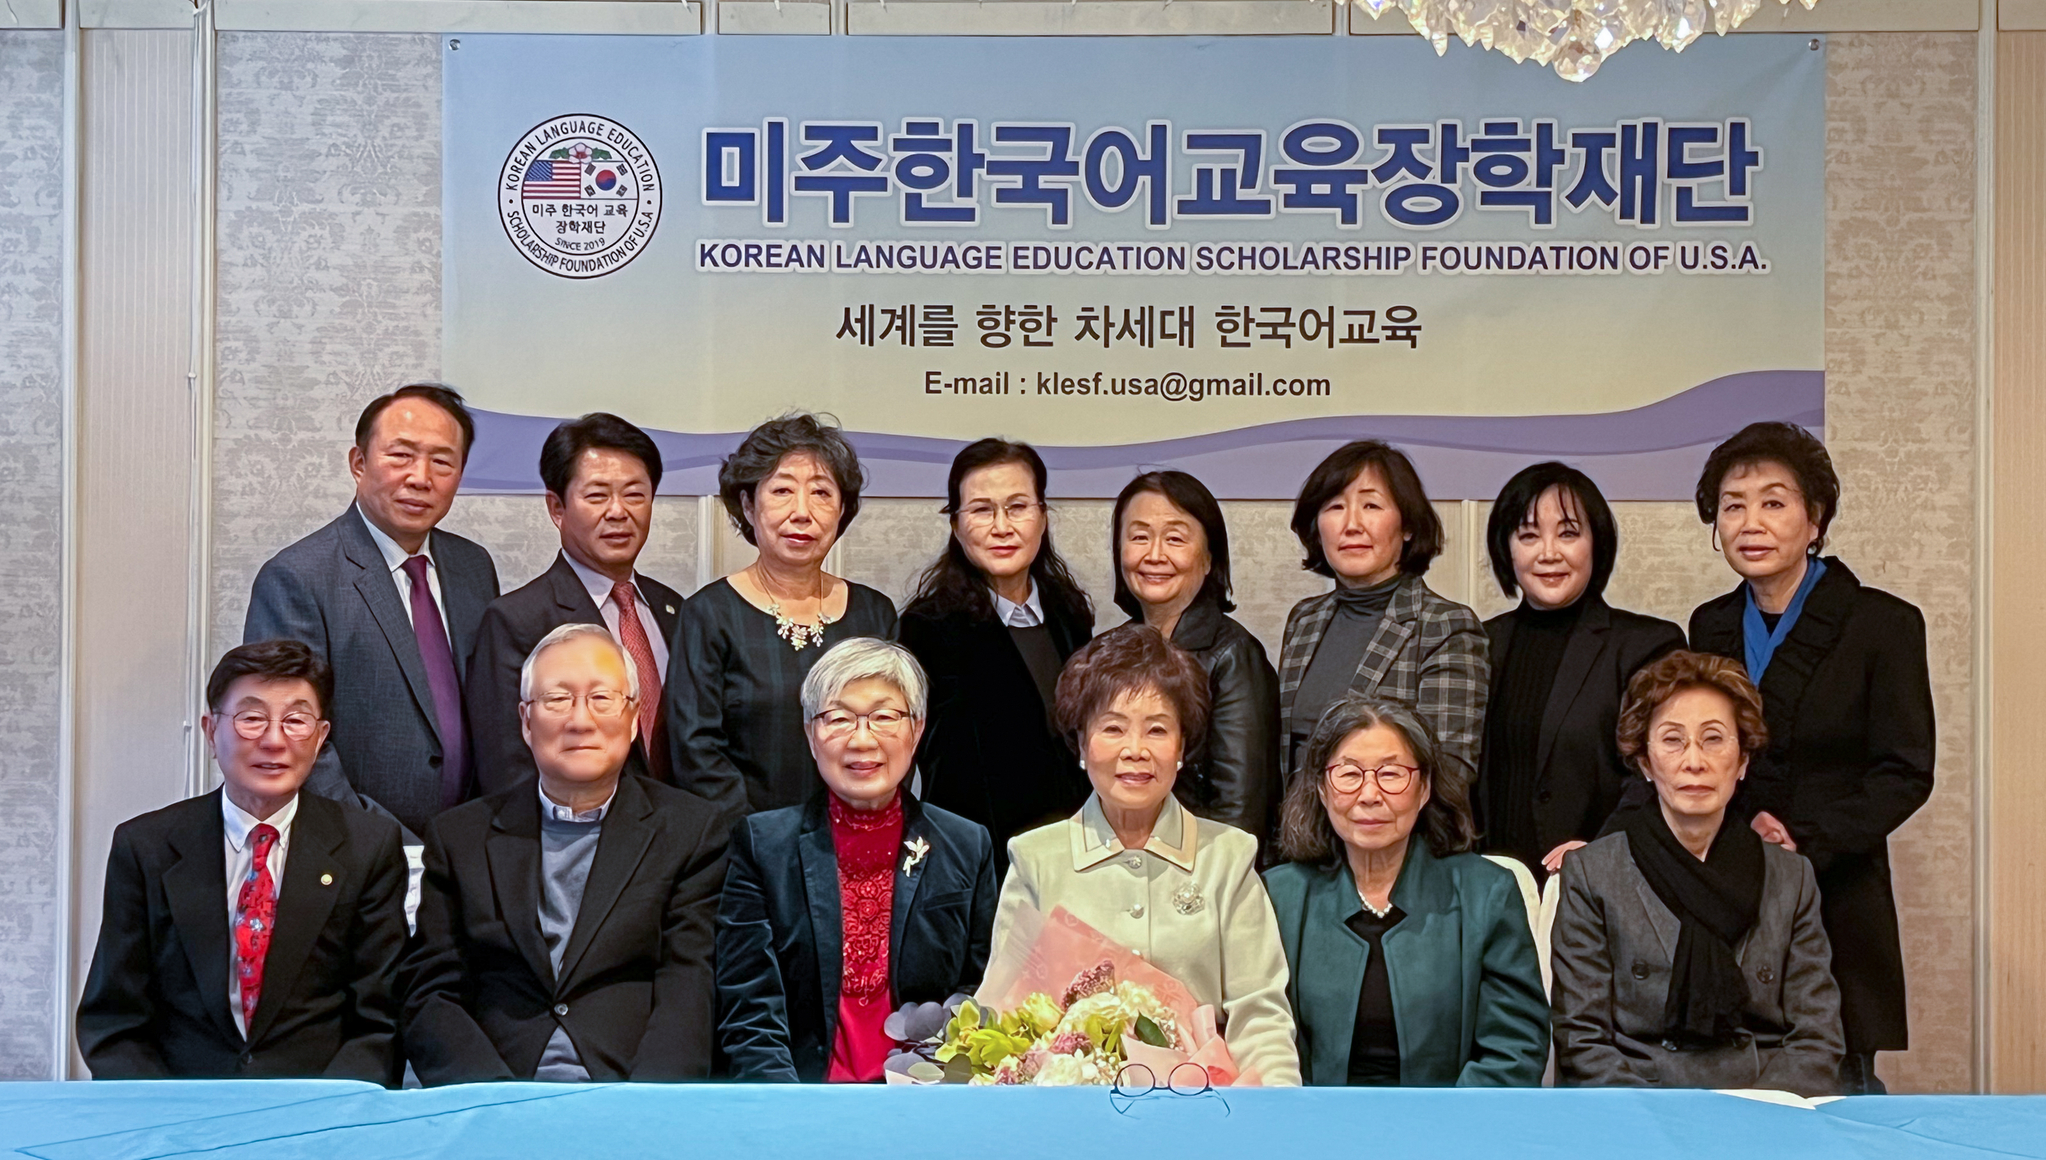 미주한국어교육장학재단은 지난달 10일 정기 총회를 열고 2대 이사장에 손혜숙 이사를 선출했다. 미주한국학교총연합회 전직 회장 8명이 2019년 설립한 이 재단은 '세계를 향한 차세대 한국어 교육'이라는 슬로건 아래 한국어 교육을 장려하고 훌륭한 교사상과 우수한 학생들을 발굴하기 위해 설립된 비영리단체다. ▶문의: (626)641-4730